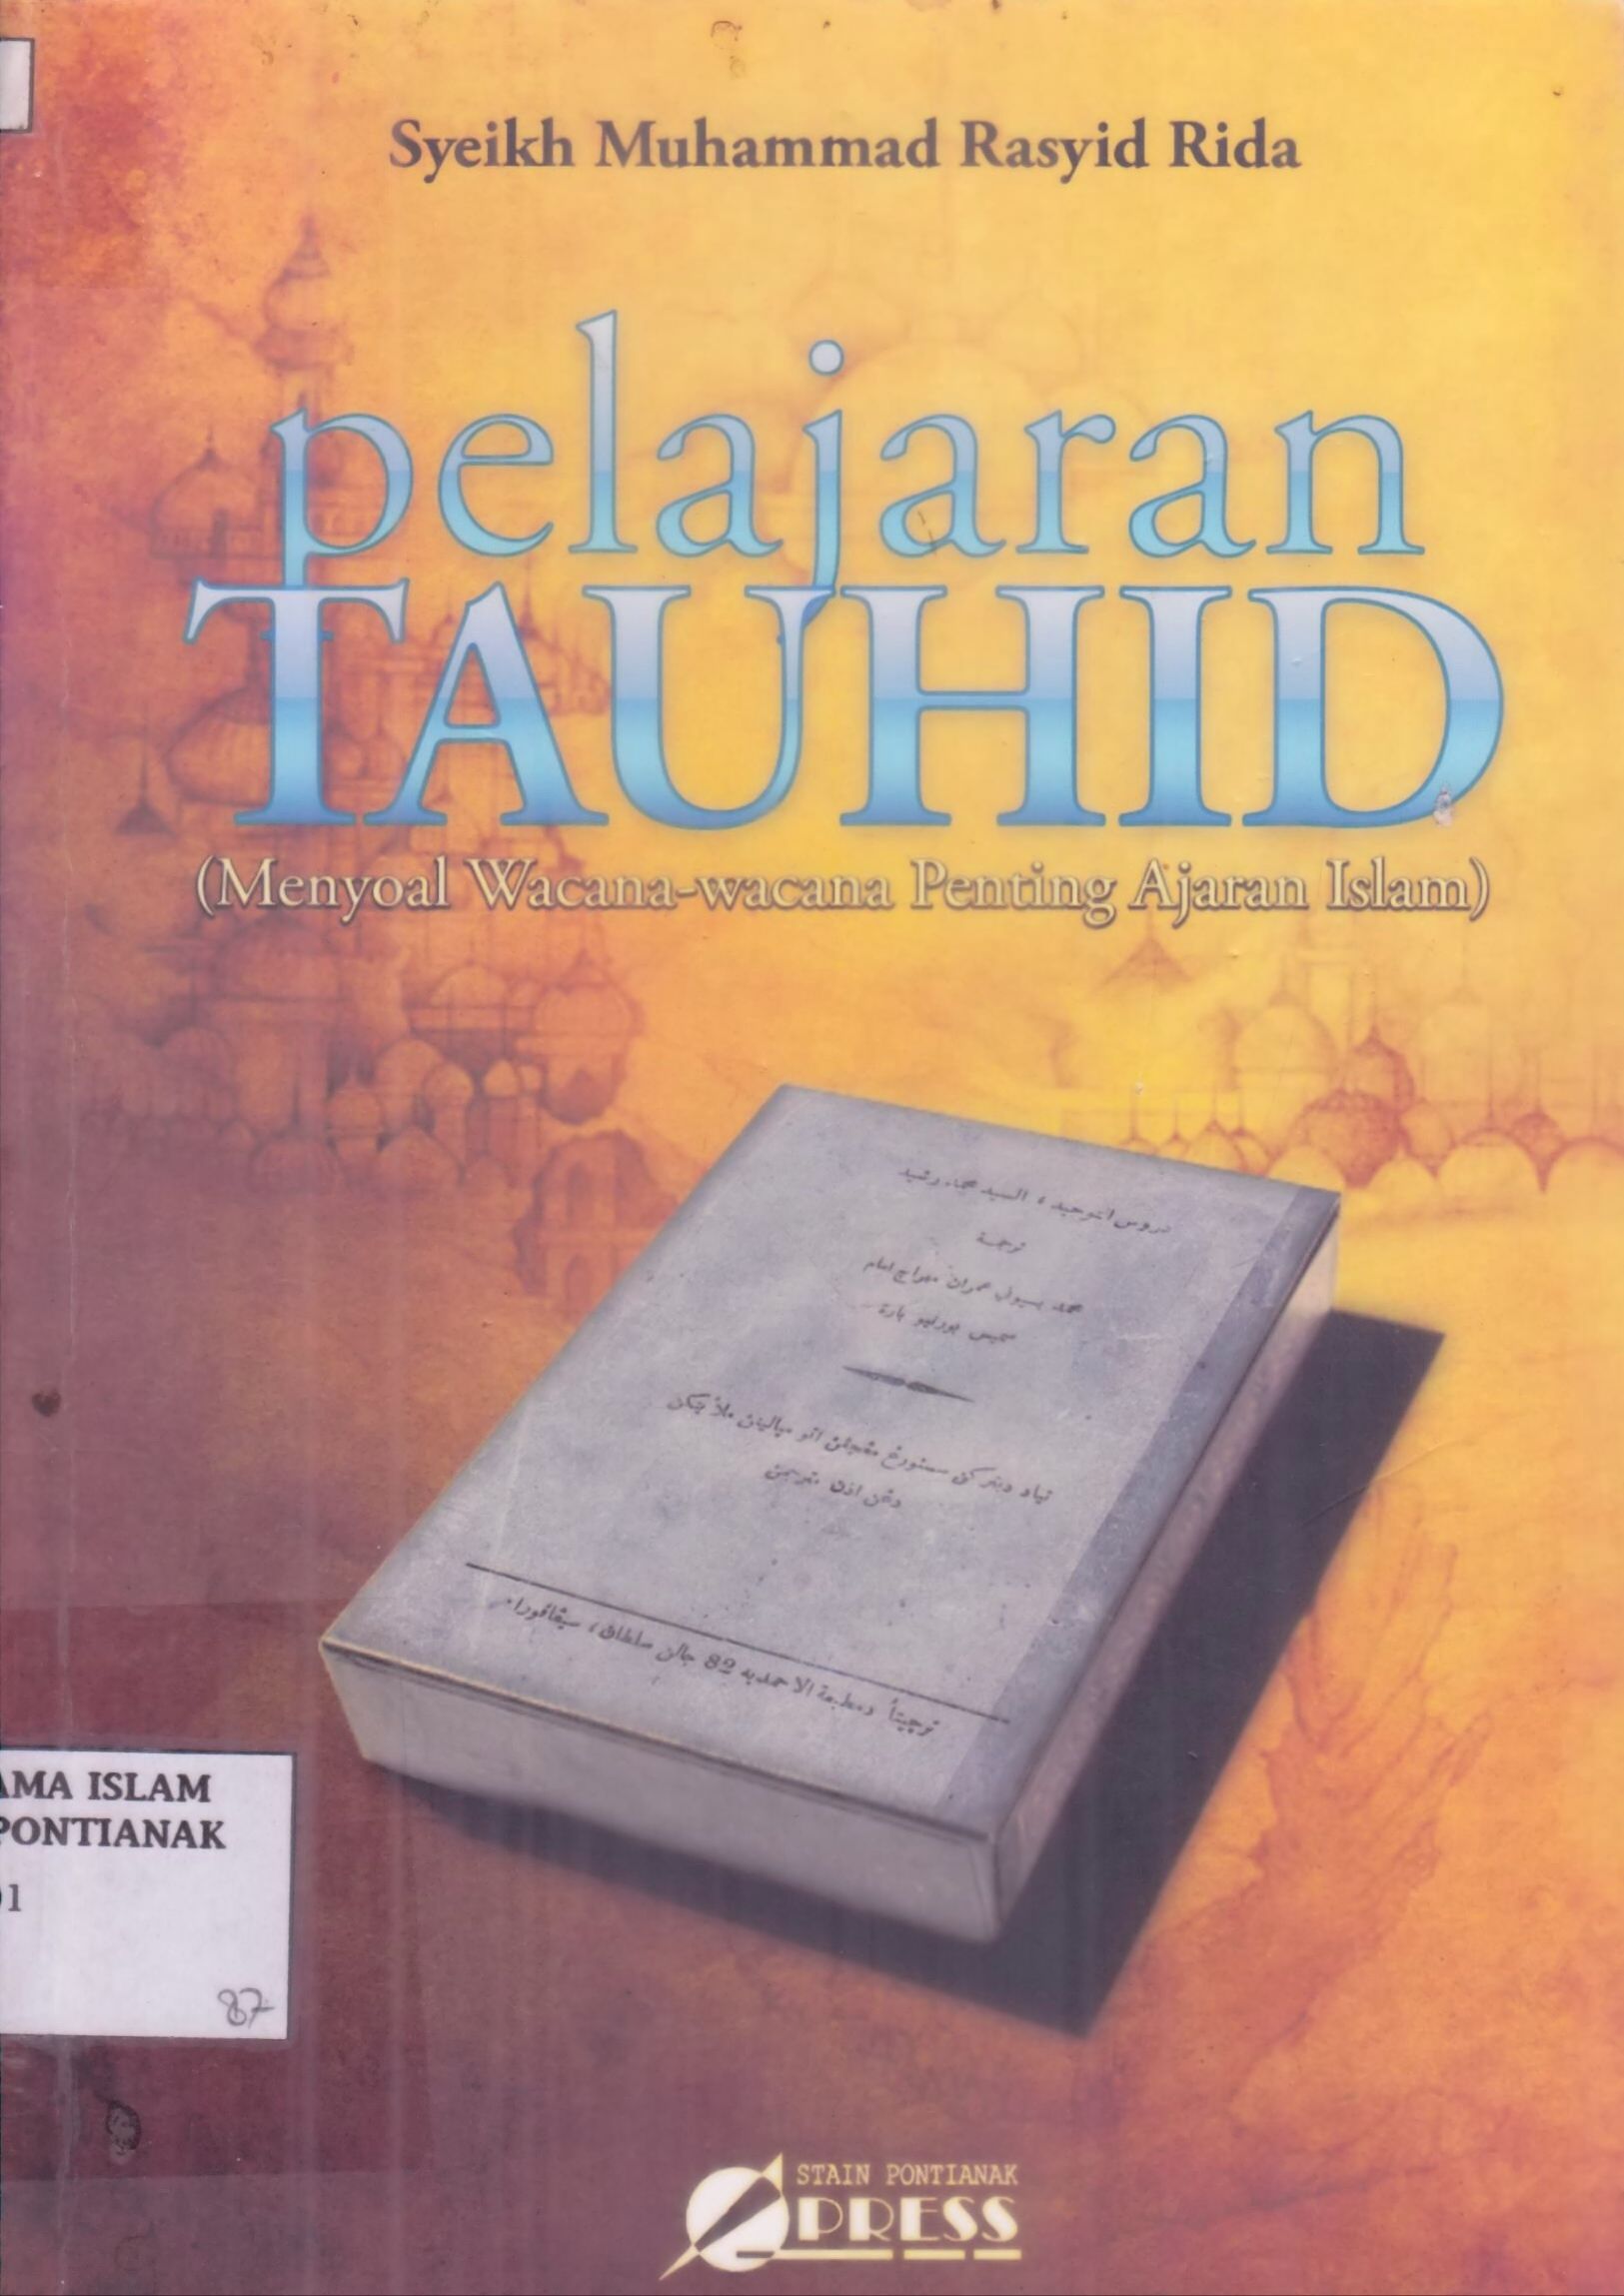 Pelajaran Tauhid : menyoal wacana-wacana penting ajaran islam